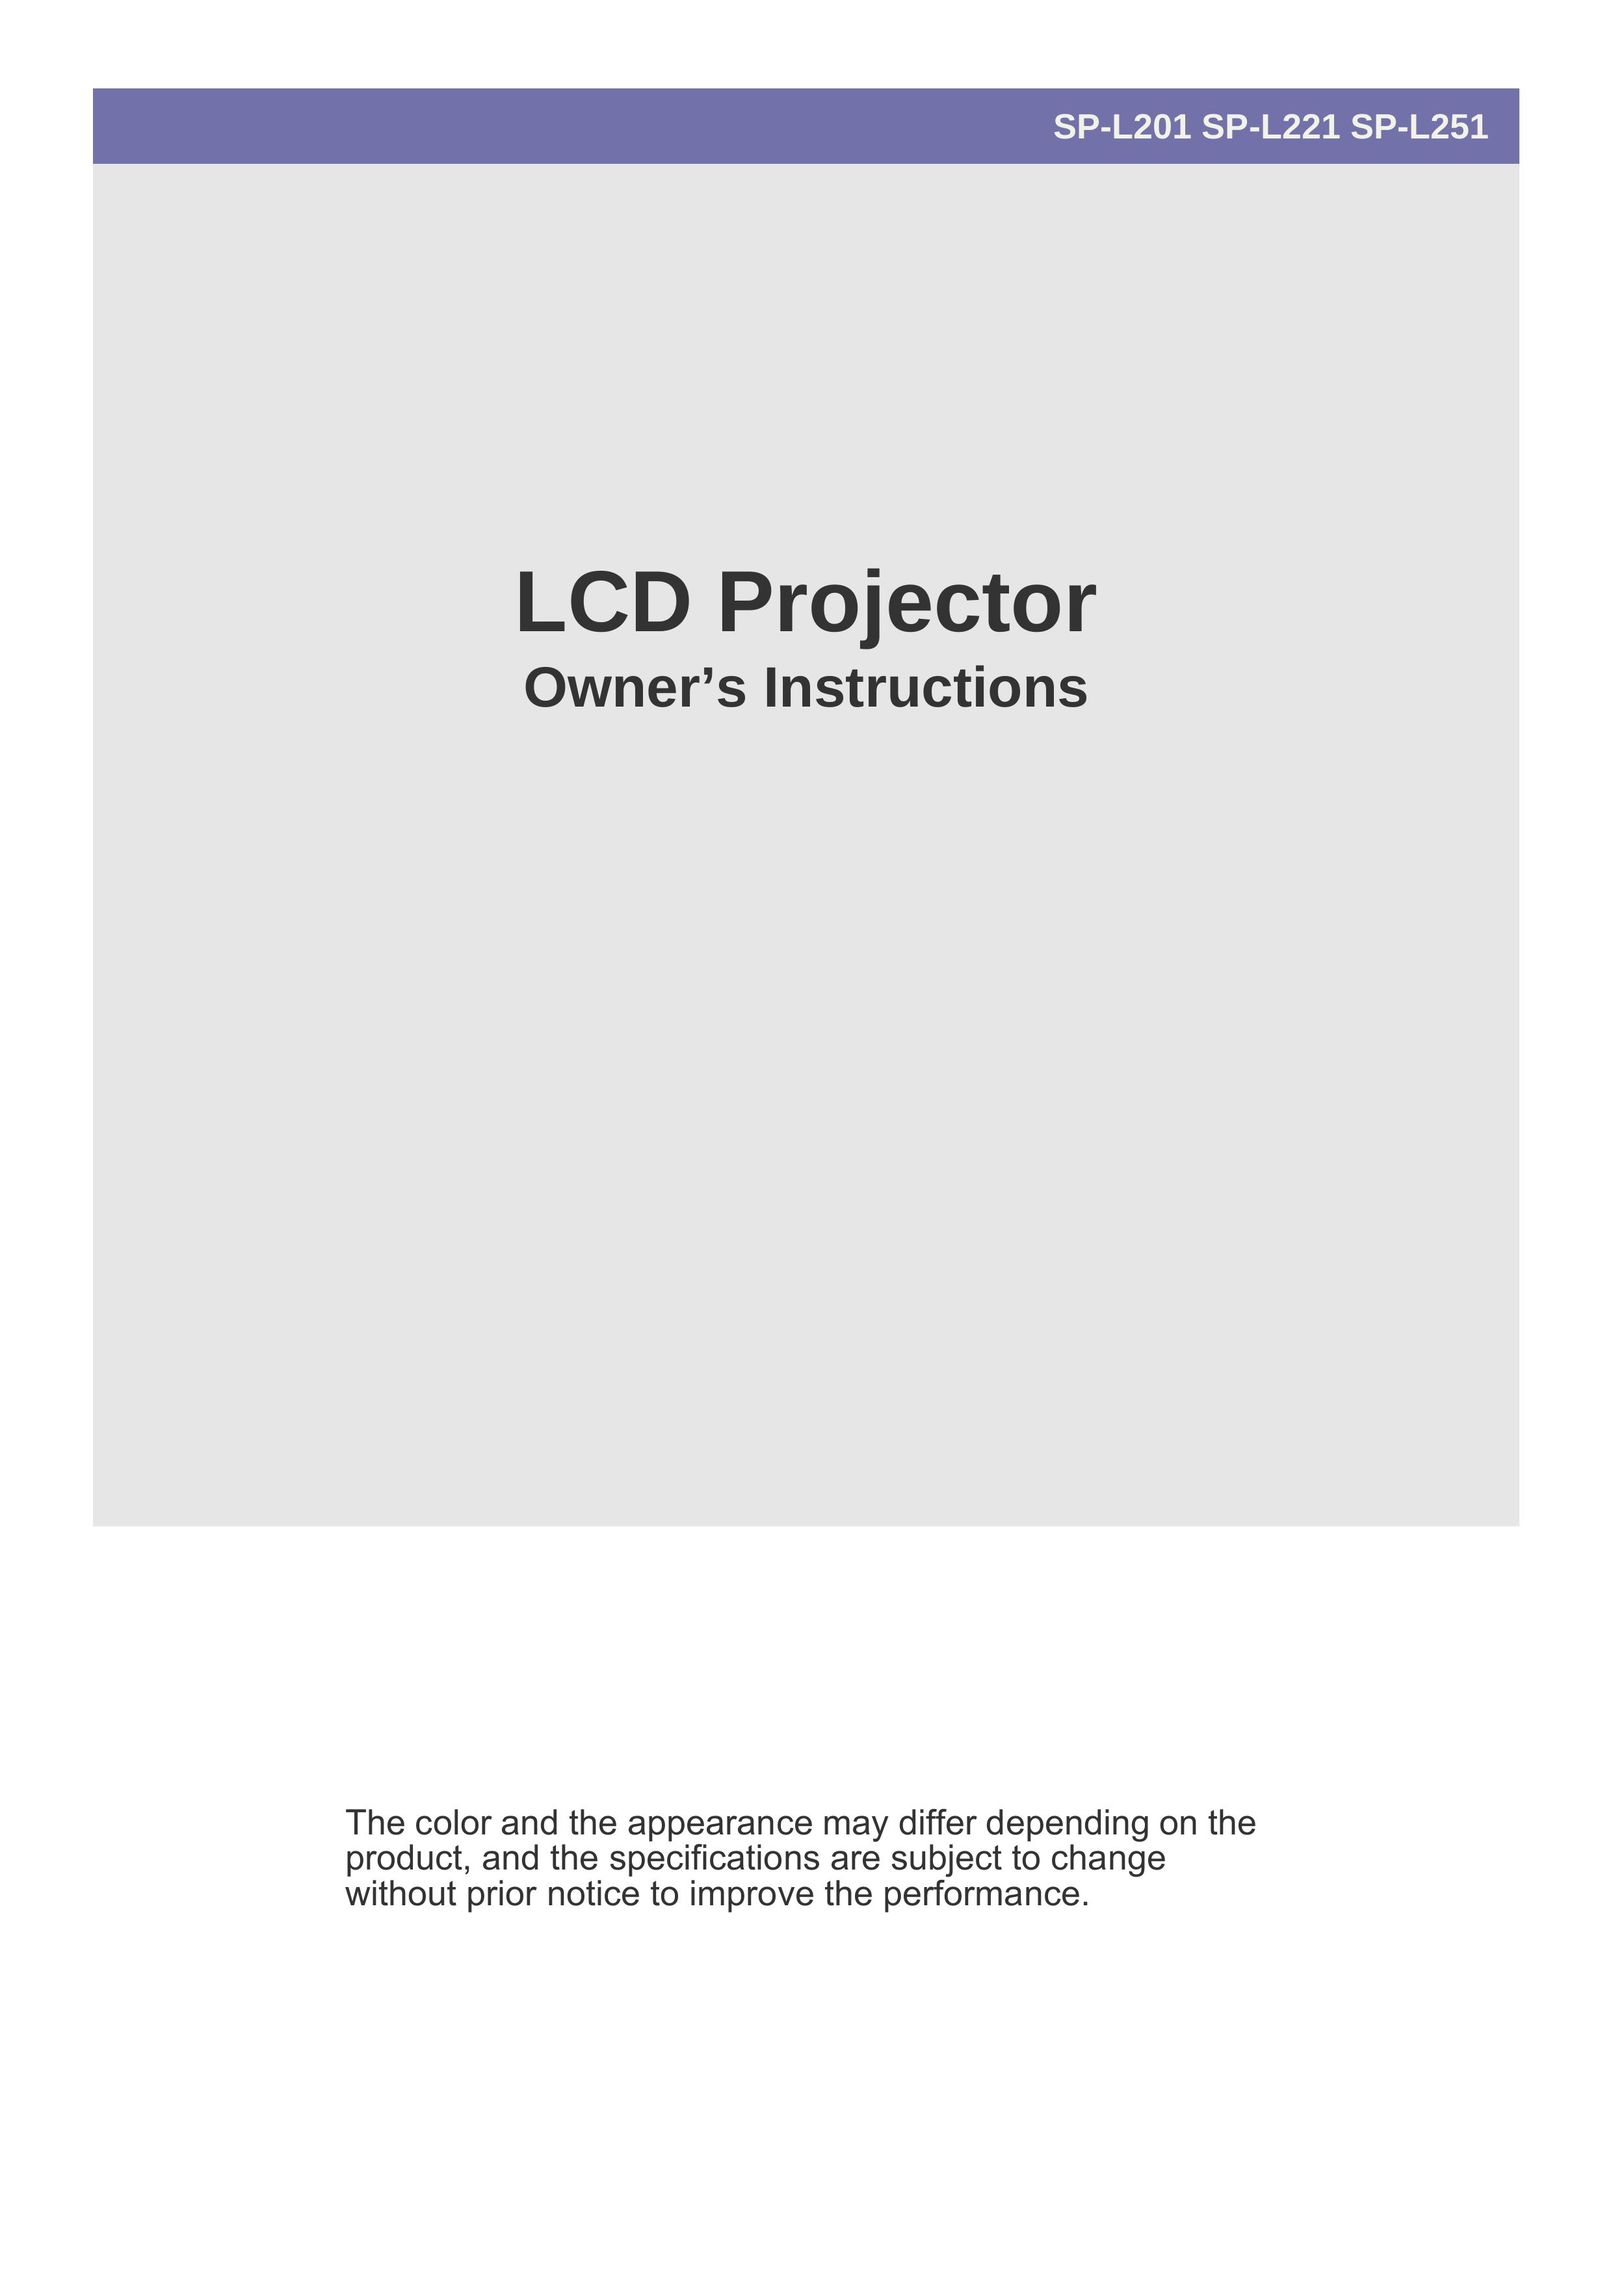 Samsung SP-L221 Projector User Manual